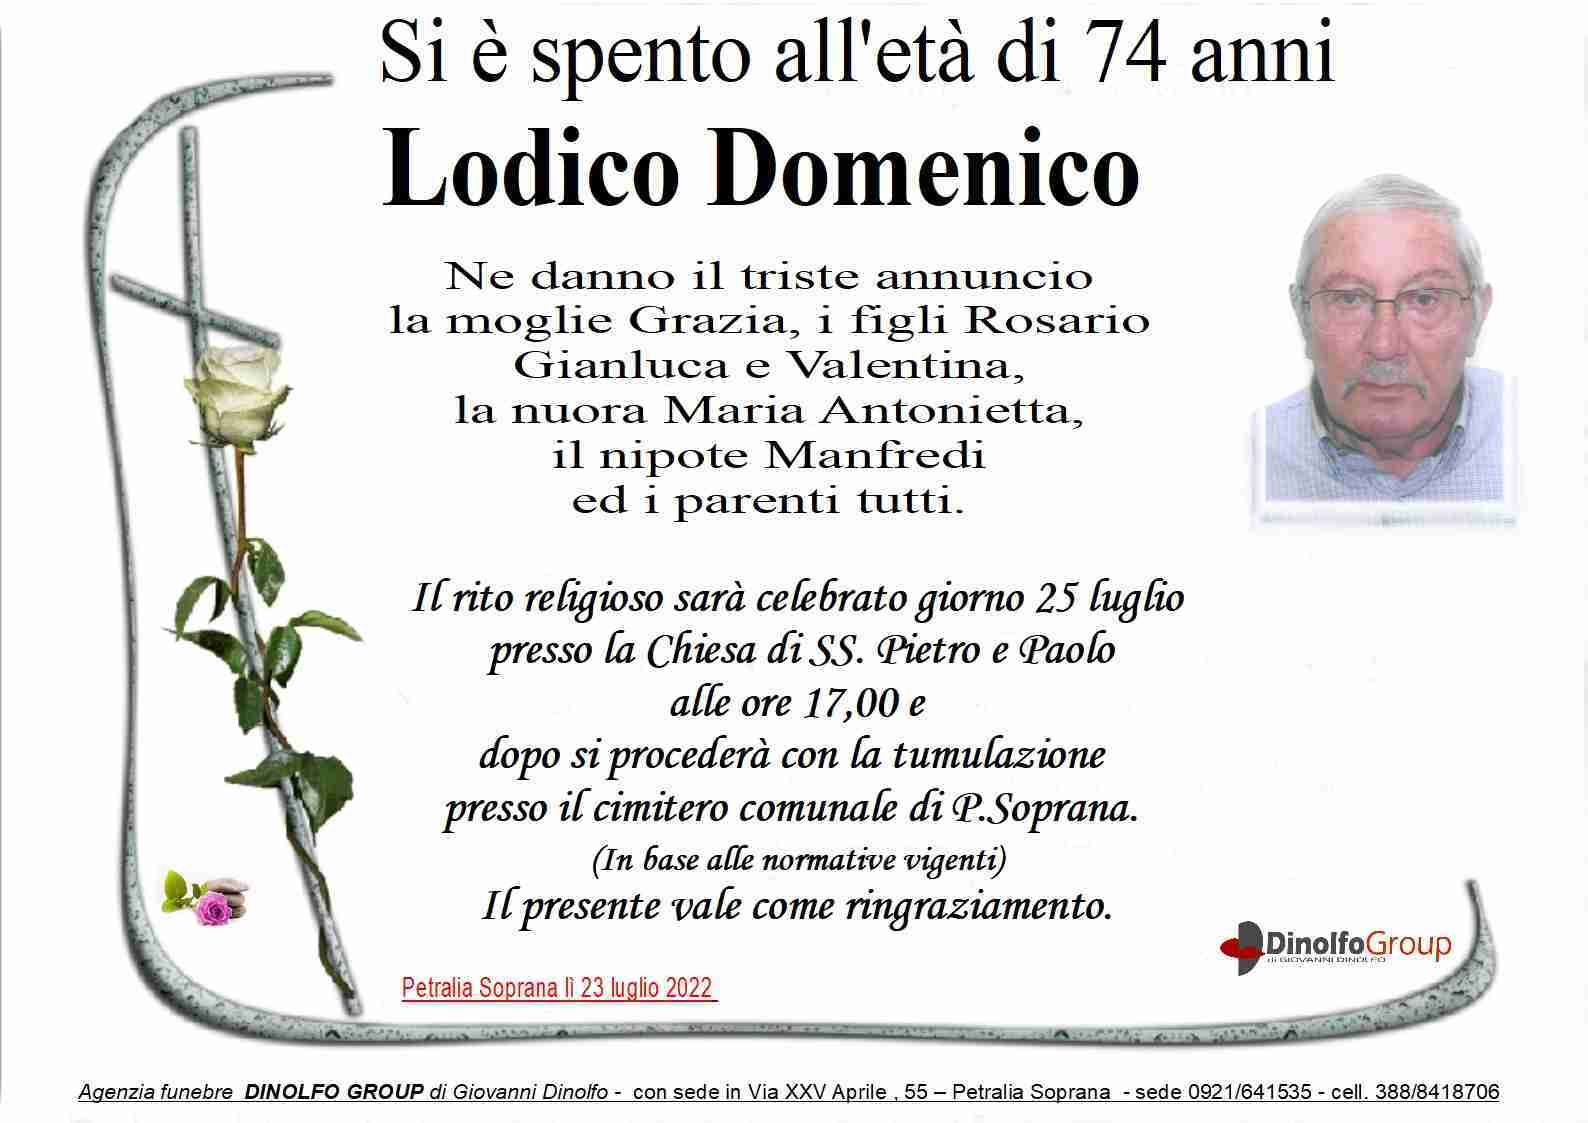 Domenico Lodico